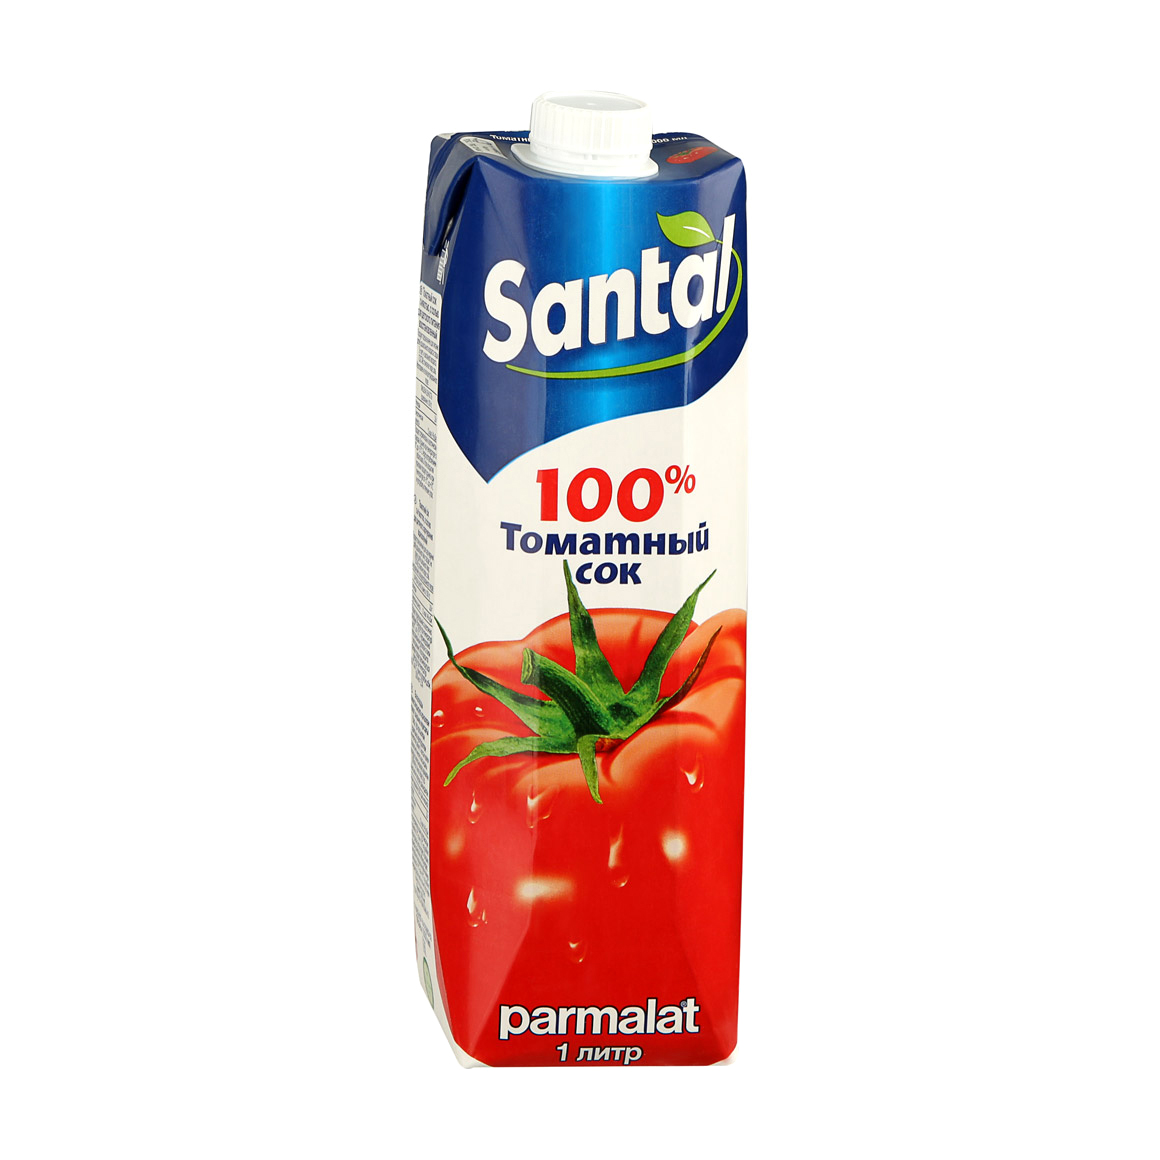 Сок Santal томатный 100% 1 л сок santal томатный с солью 1 л